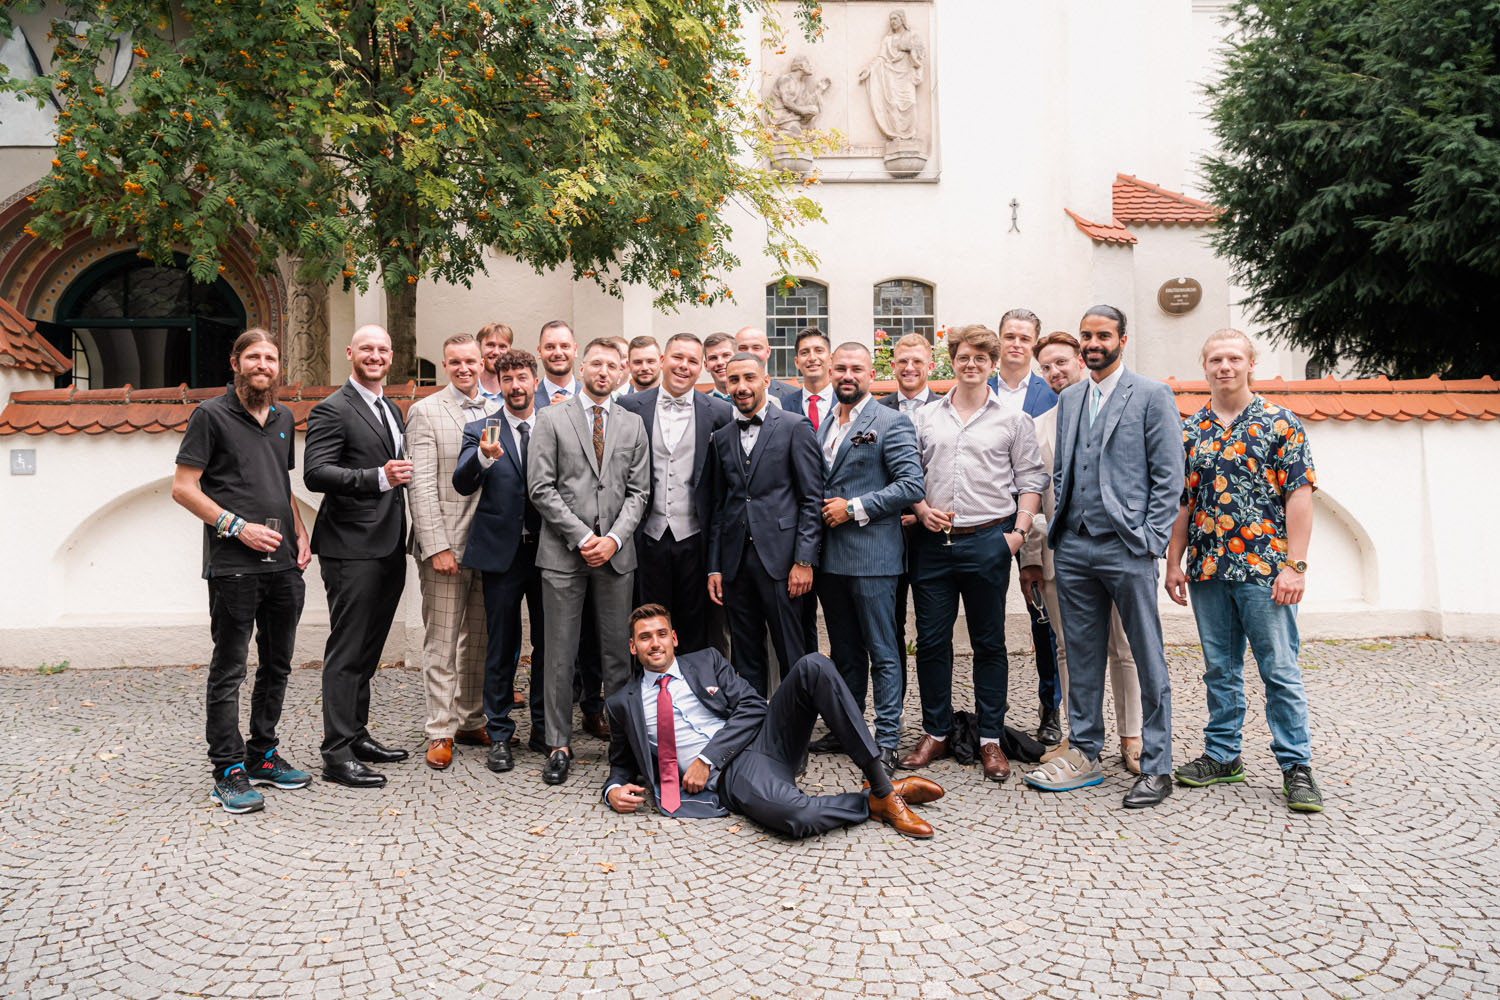 Manpower - Gruppenbild mit den Jungs nach der Hochzeit in der Erlöserkirche in Schwabing - häufige Fragen zu meinen Hochzeitsfotos beantworte ich in einem Blog